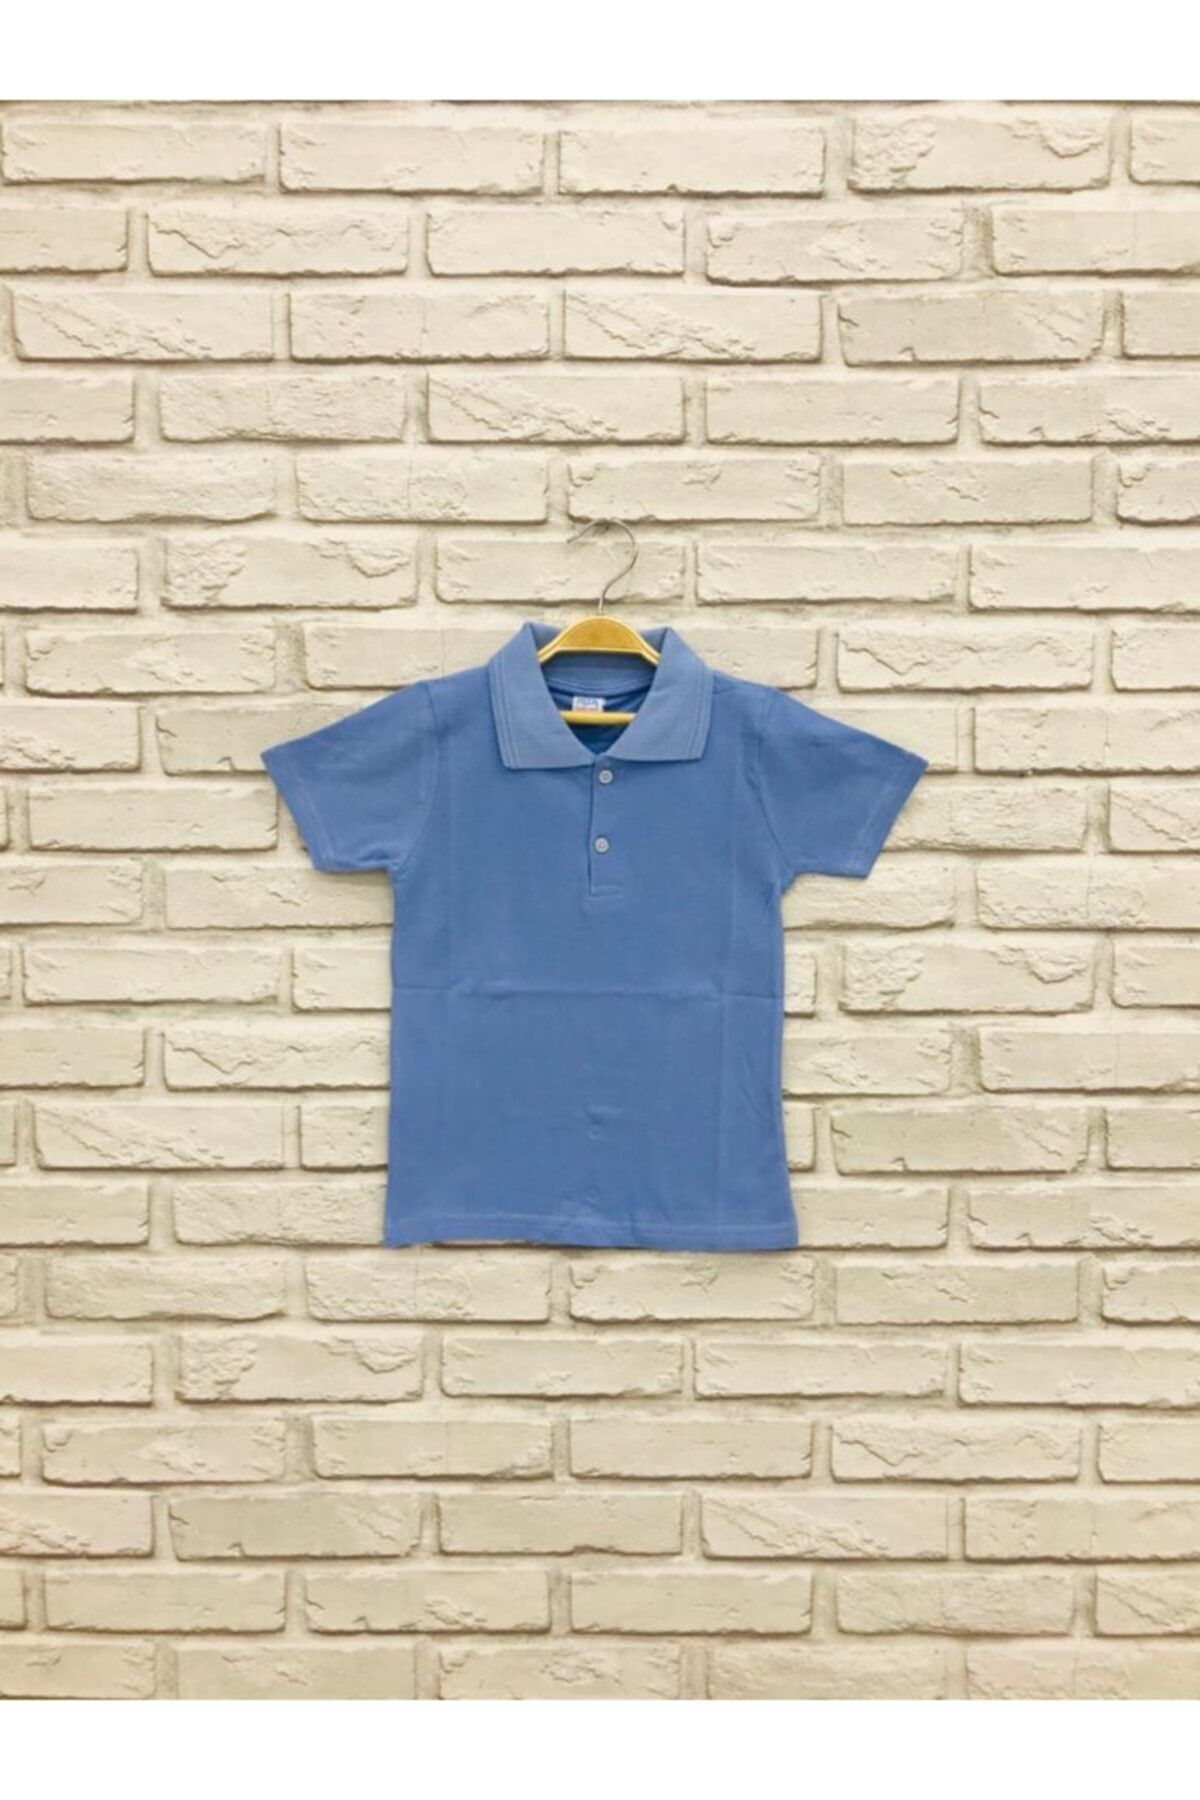 Genel Markalar Erkek Çocuk Mavi Yakalı Kısa Kollu Lacost T-shirt 0001933